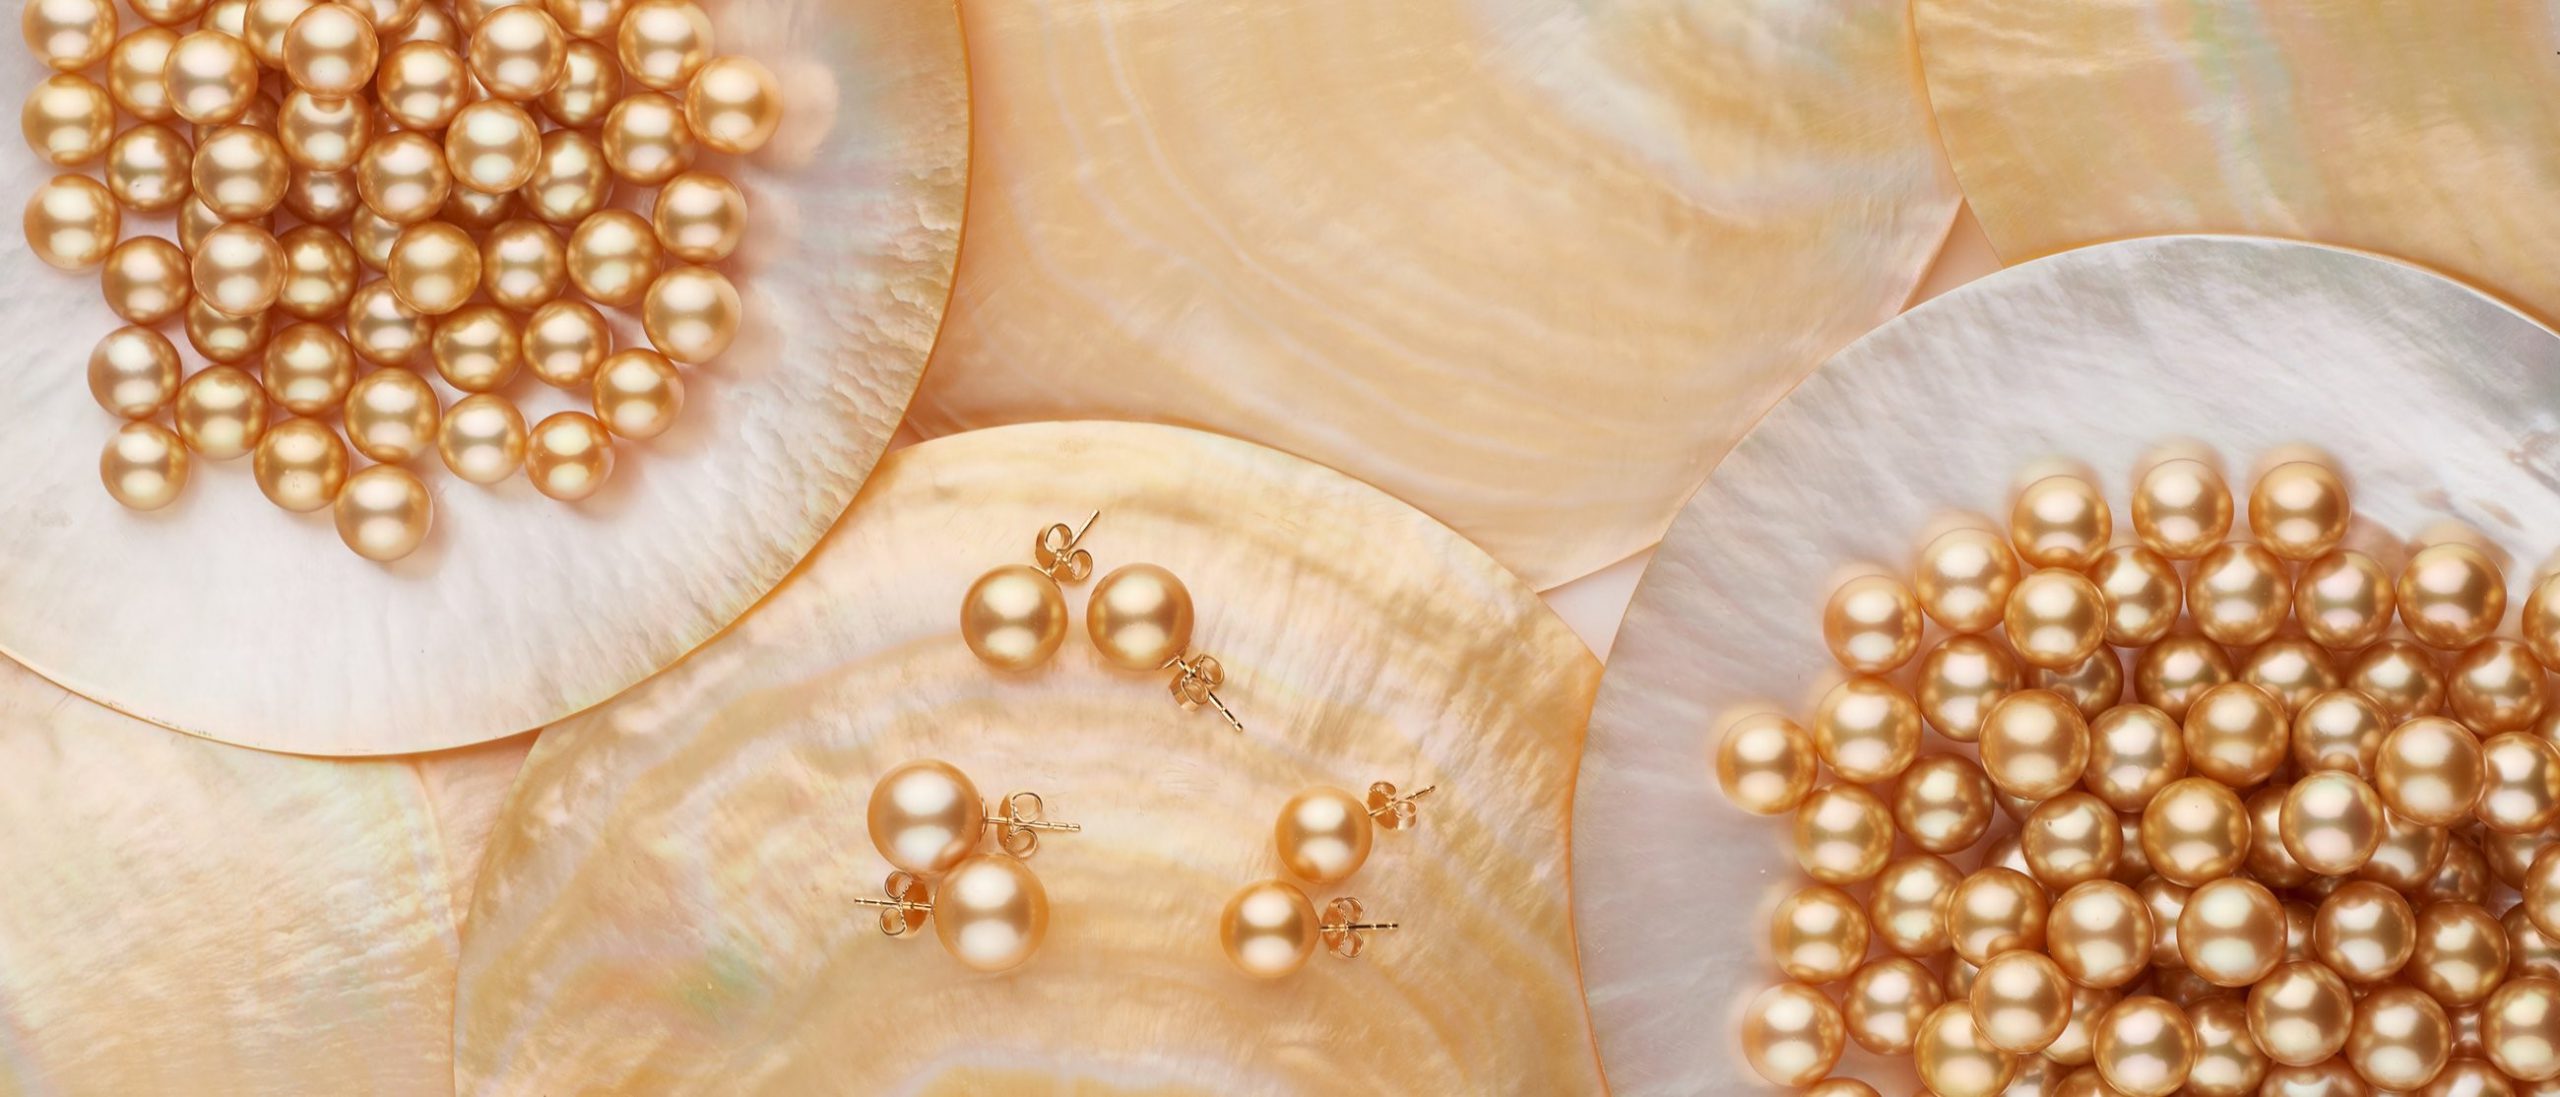 مروارید دریای جنوبی "South Sea Pearls"